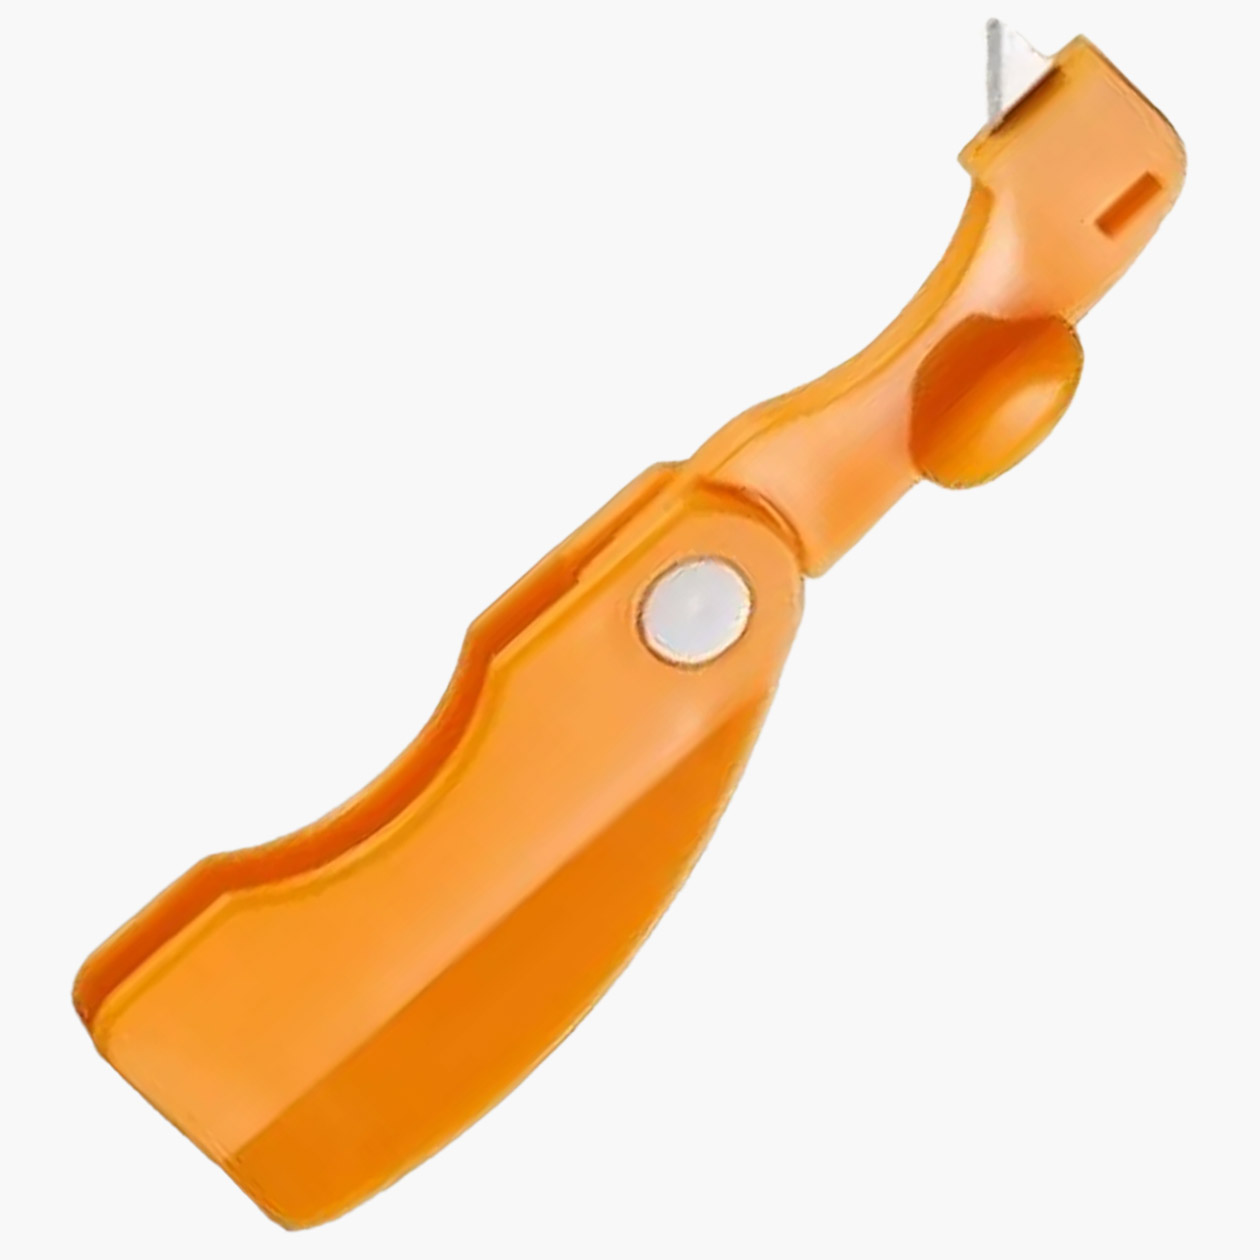 Улучшенный вариант: пластиковый нож с лезвием. Источник: ozon.ru